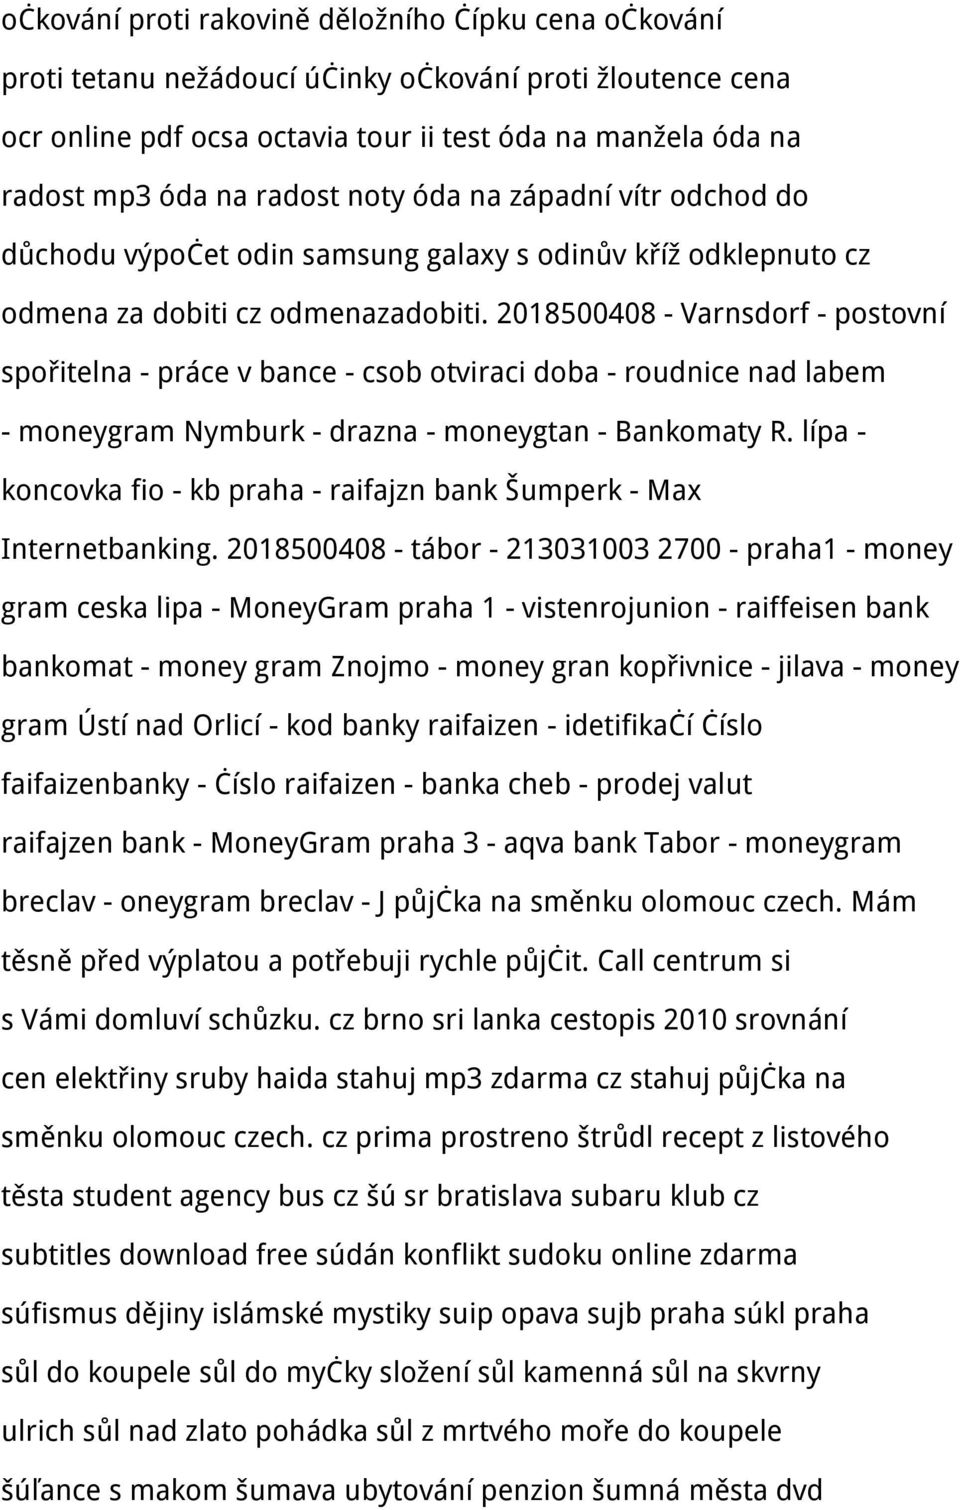 2018500408 - Varnsdorf - postovní spořitelna - práce v bance - csob otviraci doba - roudnice nad labem - moneygram Nymburk - drazna - moneygtan - Bankomaty R.